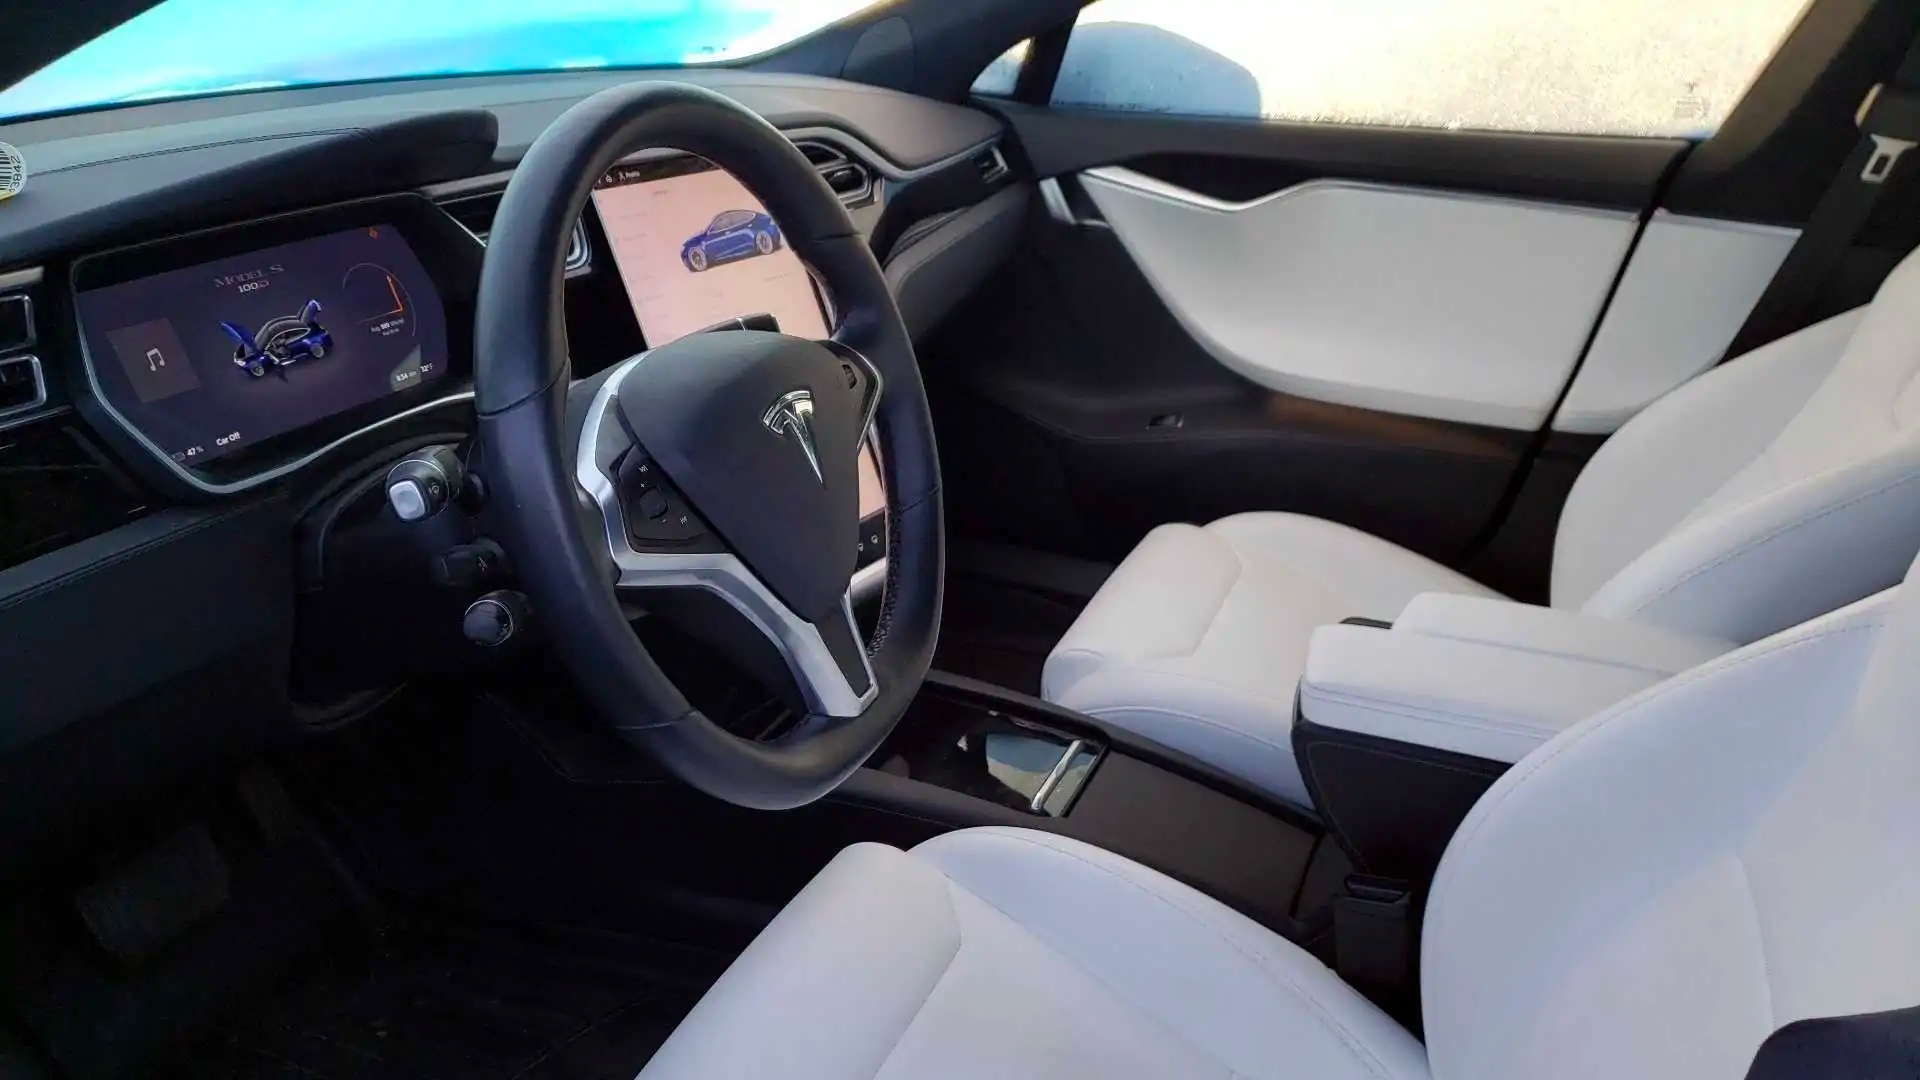 Este Tesla S de segunda mano tiene 166.000 km, aun así se ha vendido por más de lo habitual - Actualidad - Híbridos y Eléctricos | Coches eléctricos, enchufables